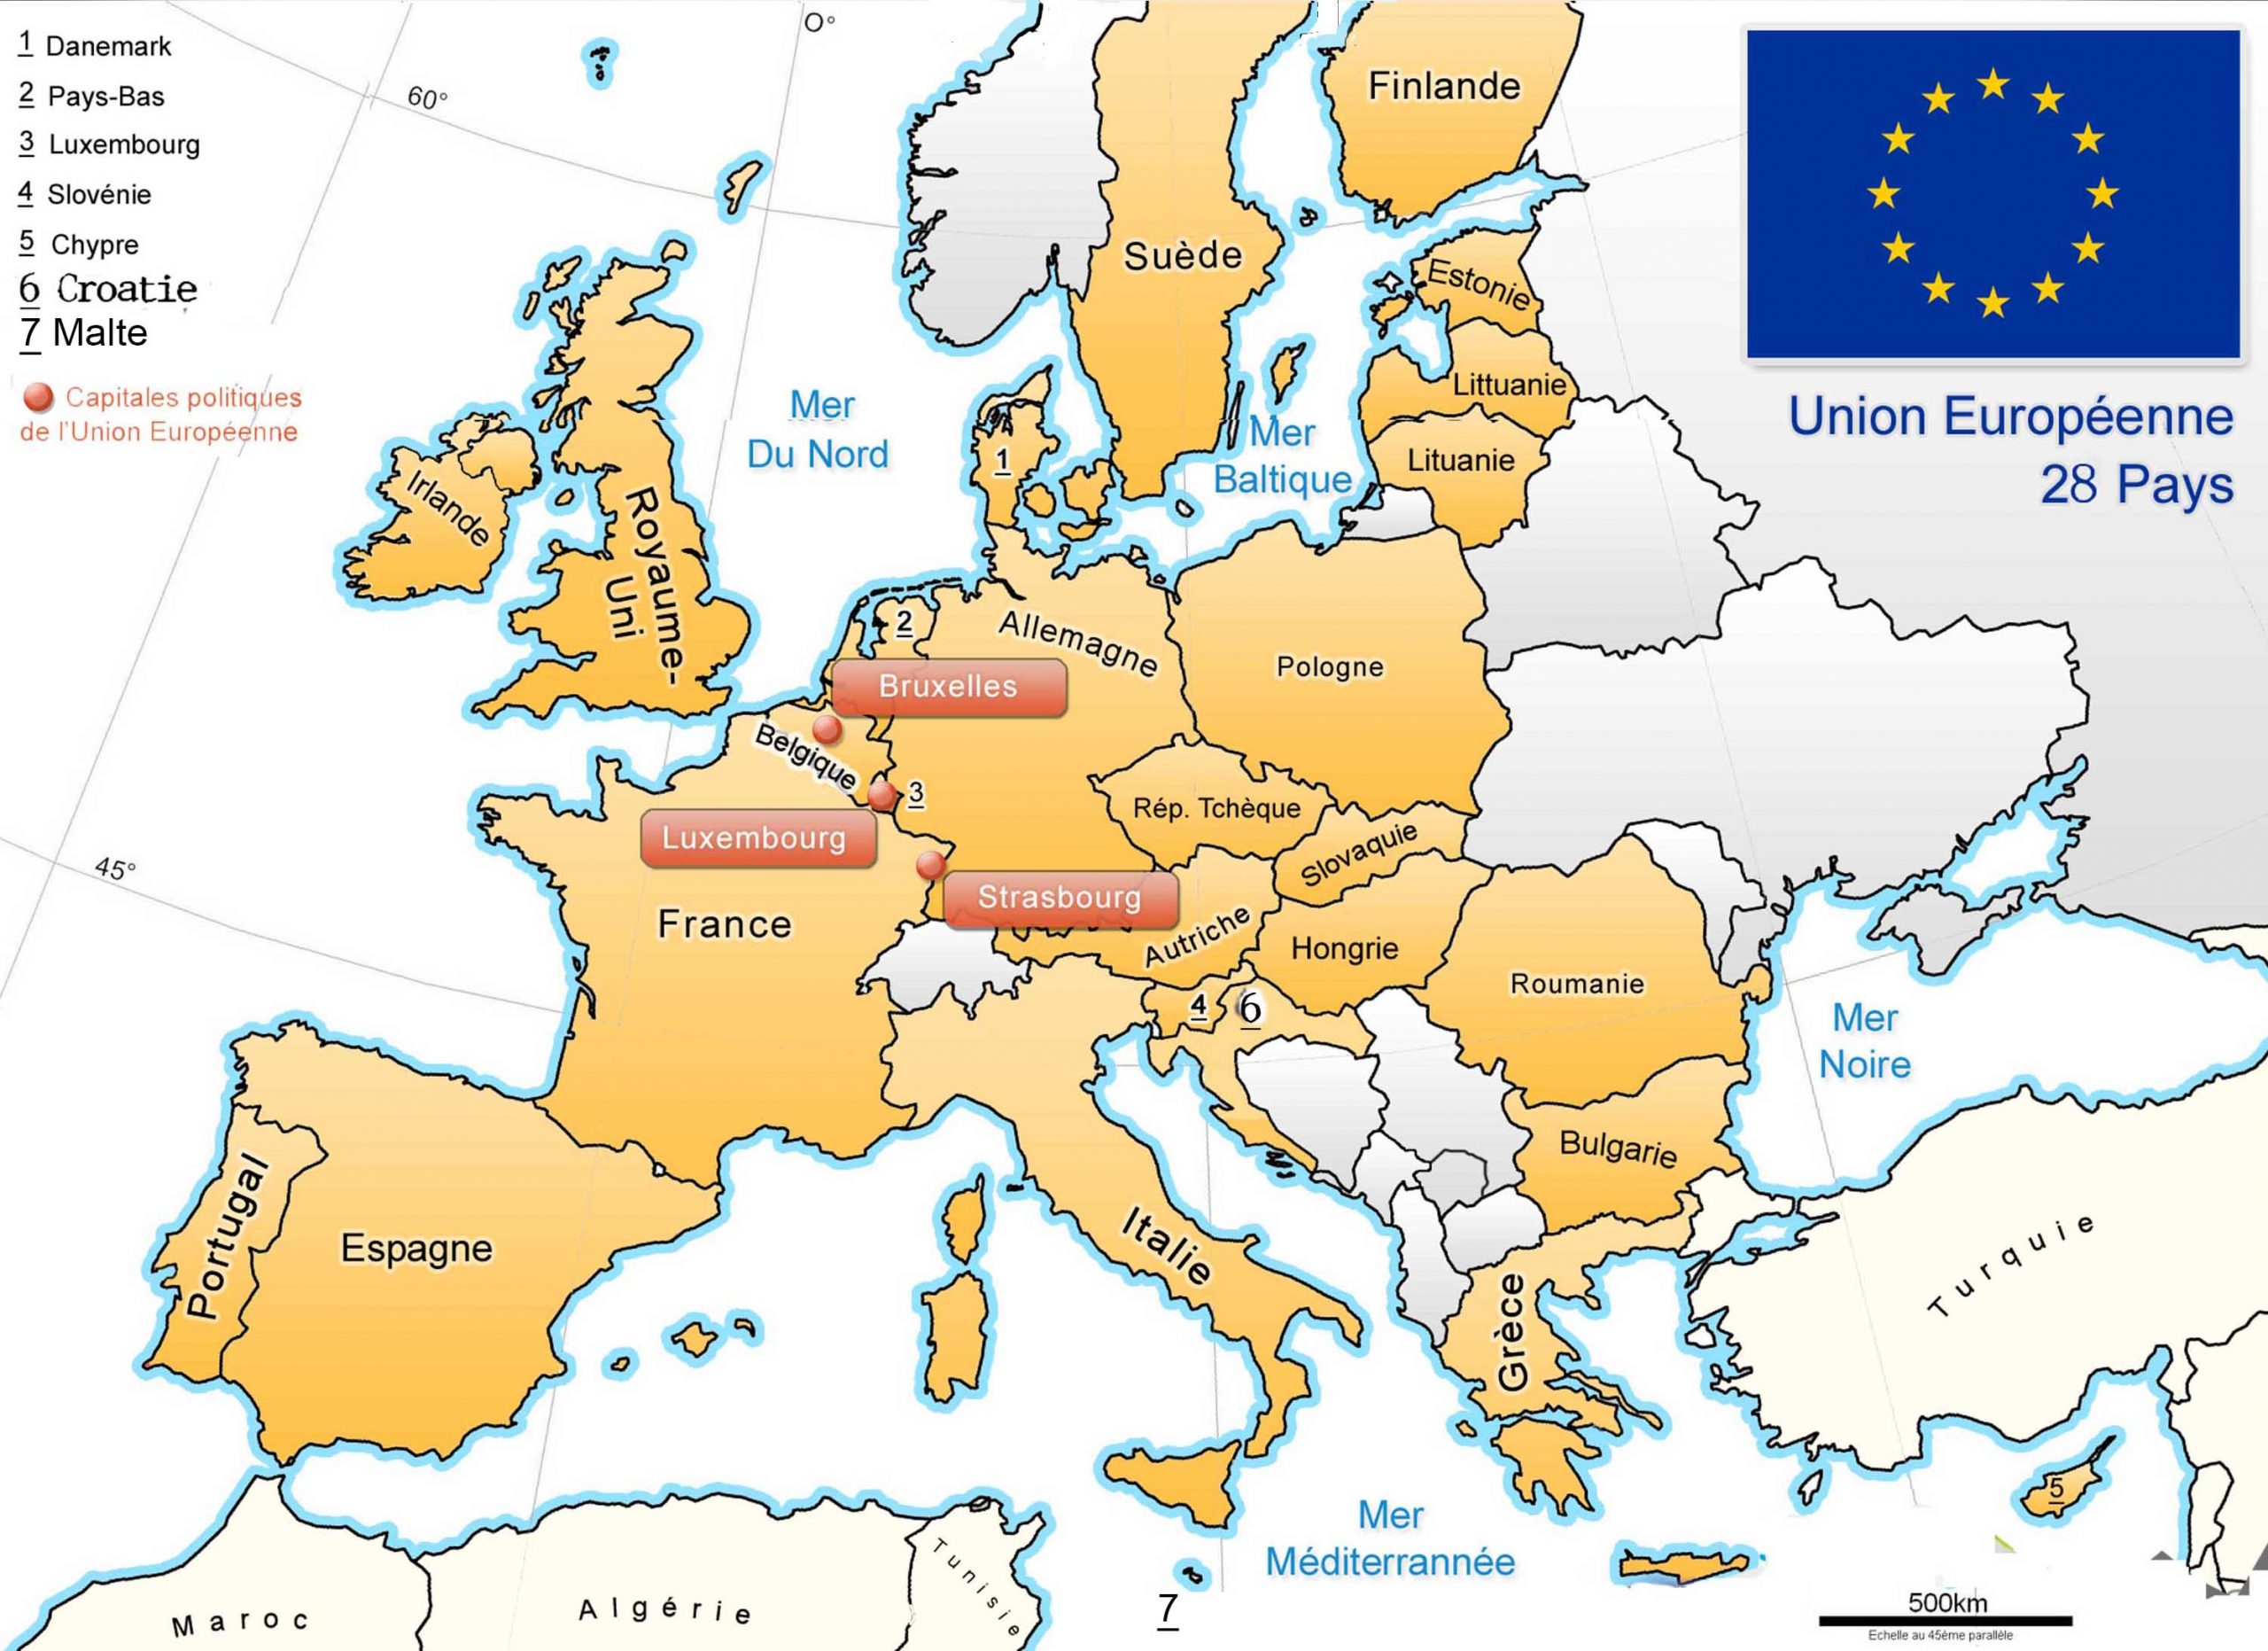 Apprendre À Placer Les Pays De L&amp;#039; Union Européenne - Le Blog intérieur Capitale Union Européenne 